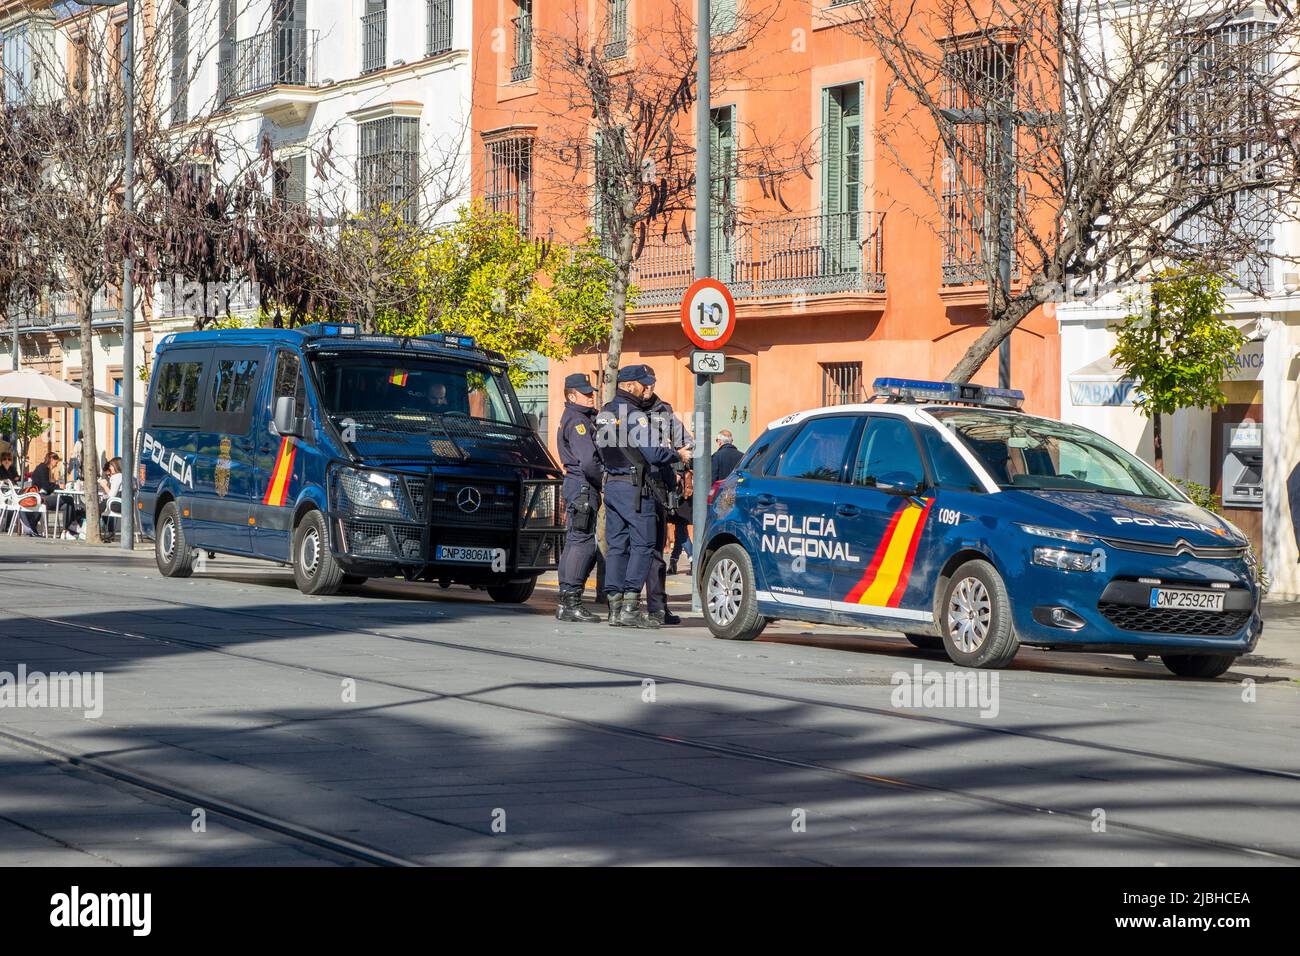 Spanische Nationale Polizeibeamte Und Polizeiwagen Und Polizeiwagen In Sevilla Stadtzentrum Spanien, Policia Nacional Spanien Stockfoto